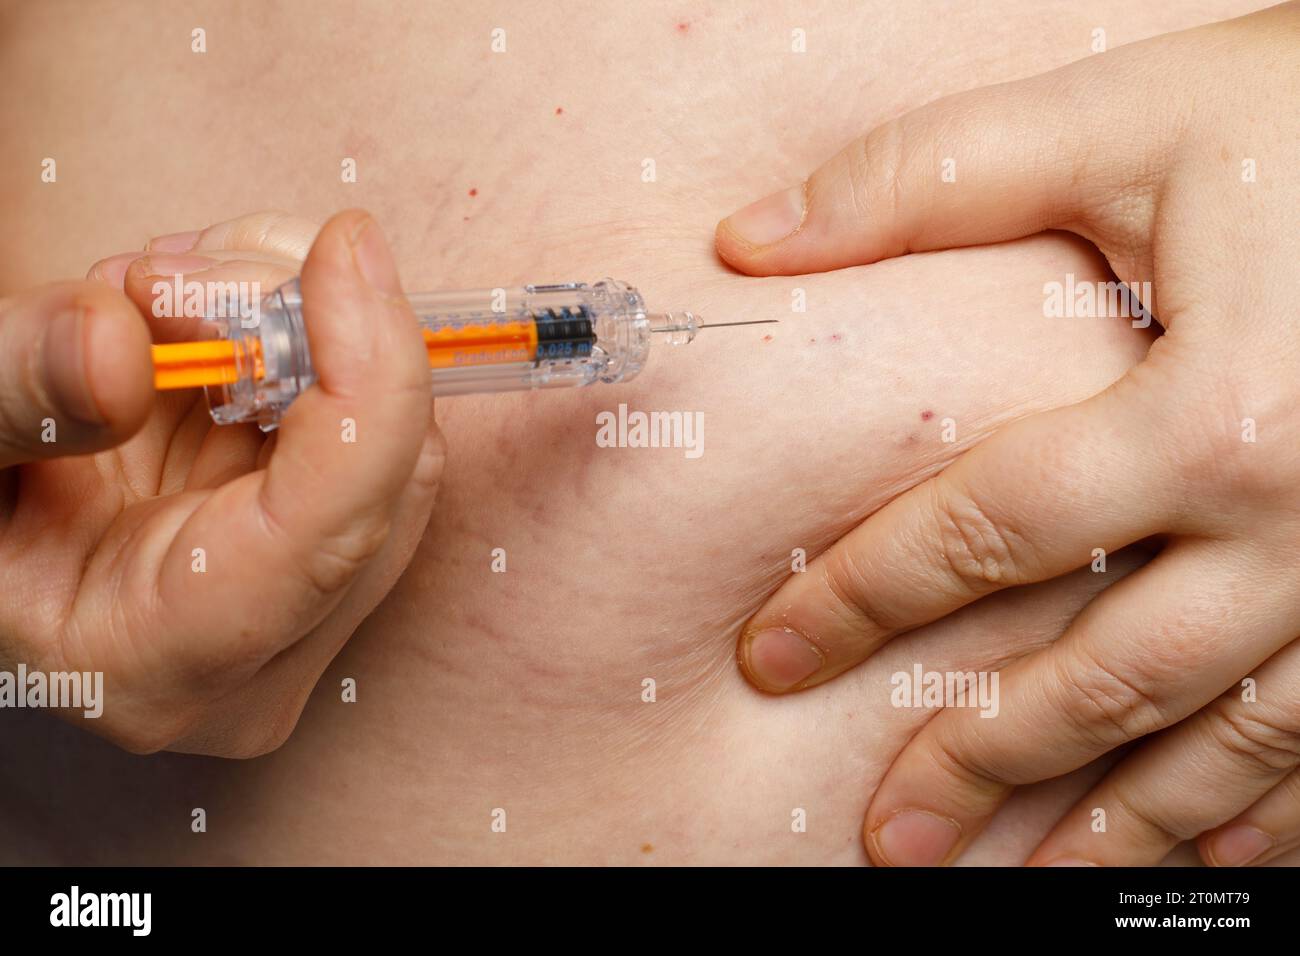 Gros plan de l'abdomen humain. La personne injecte dans l'estomac de soi avec une seringue Banque D'Images